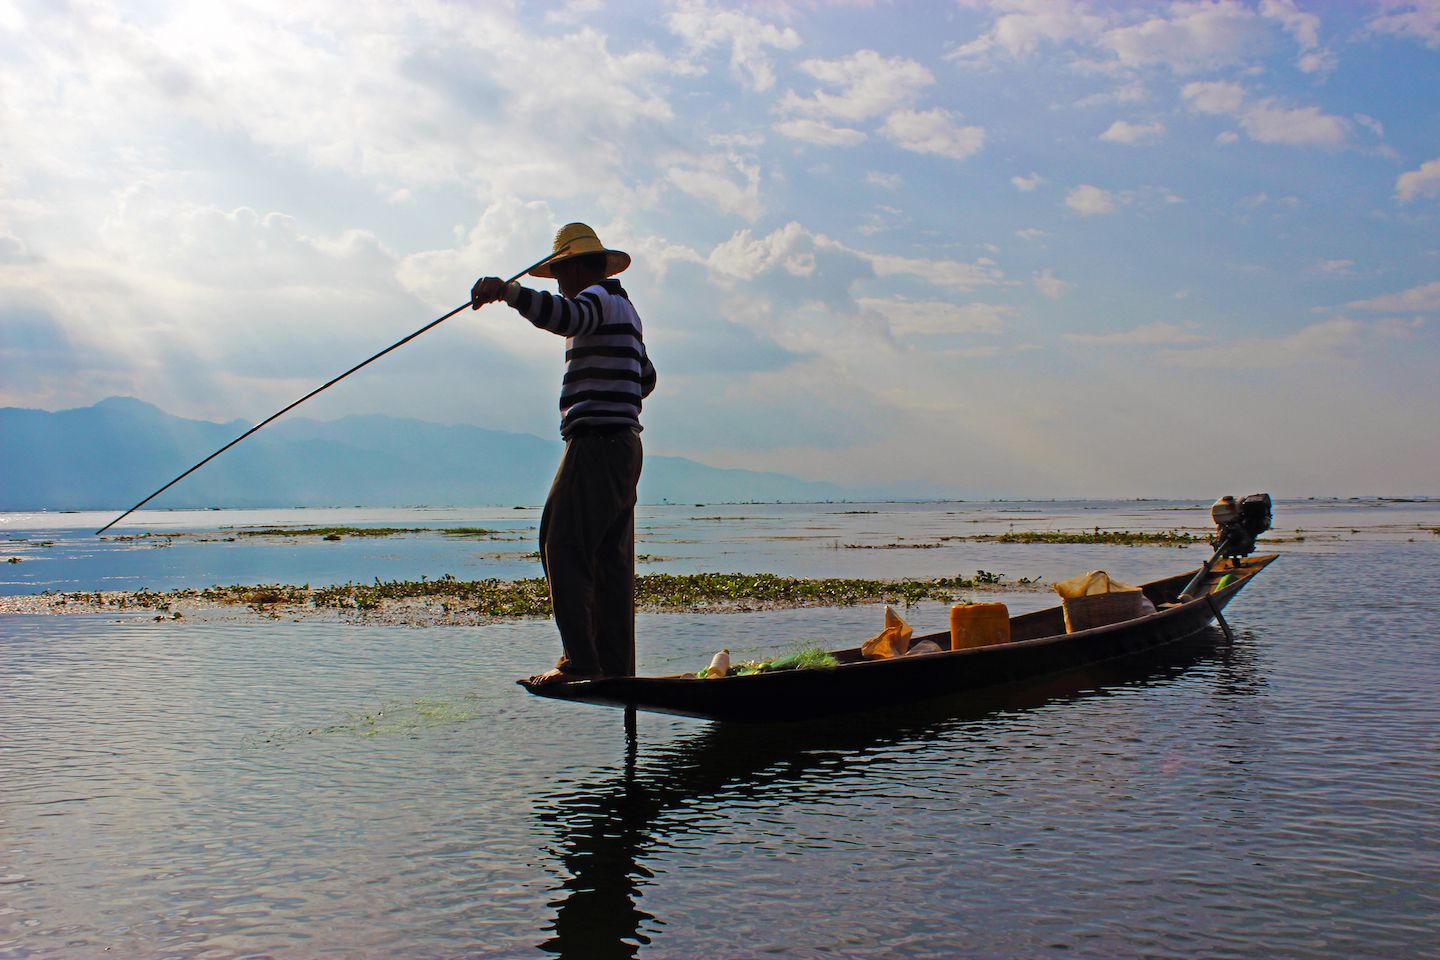 Fisherman fishing at Inle Lake, Myanmar